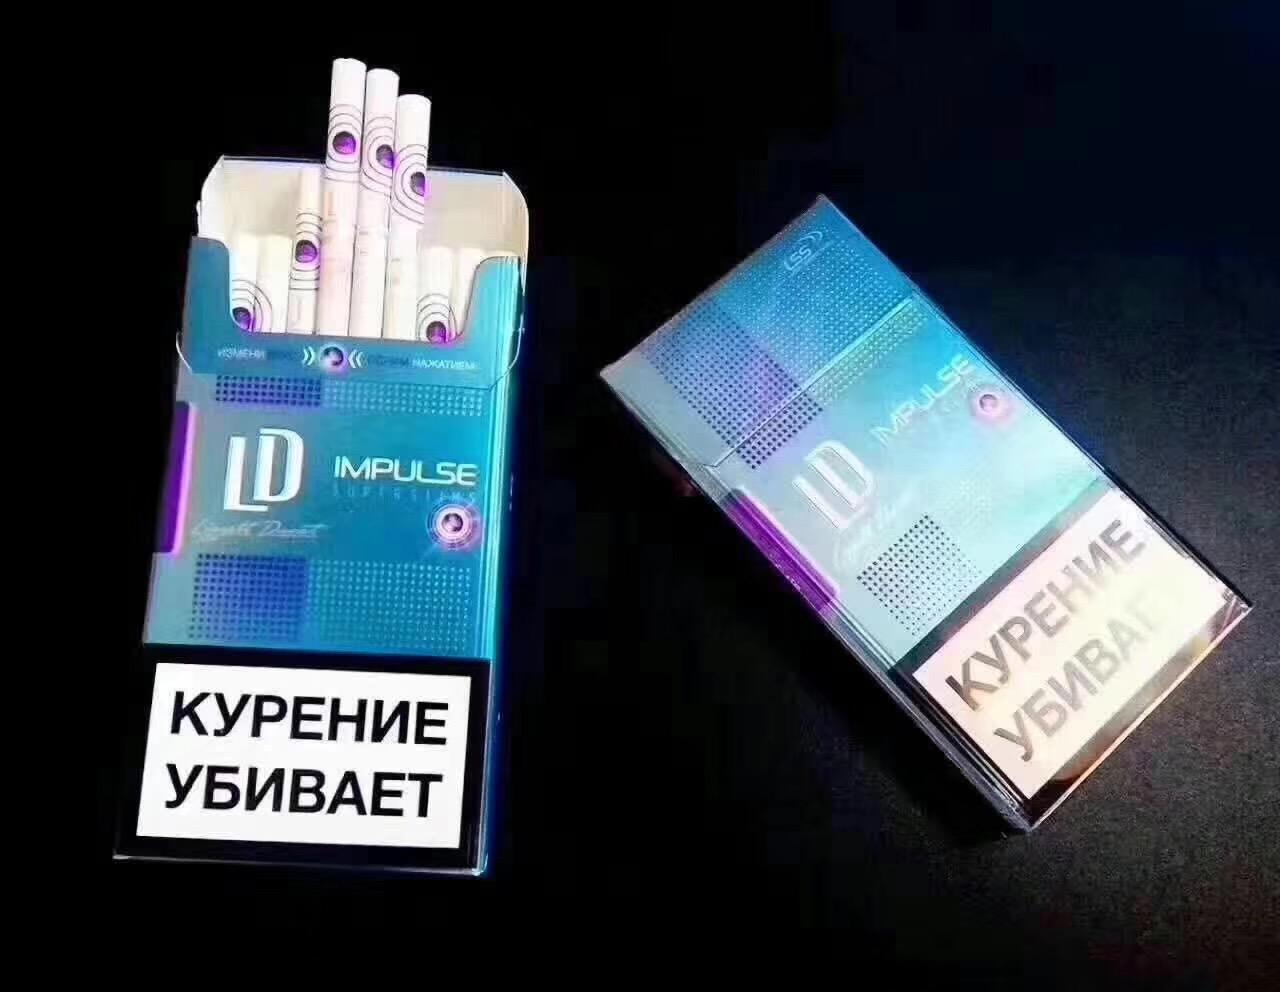 俄罗斯有那些烟好抽? 